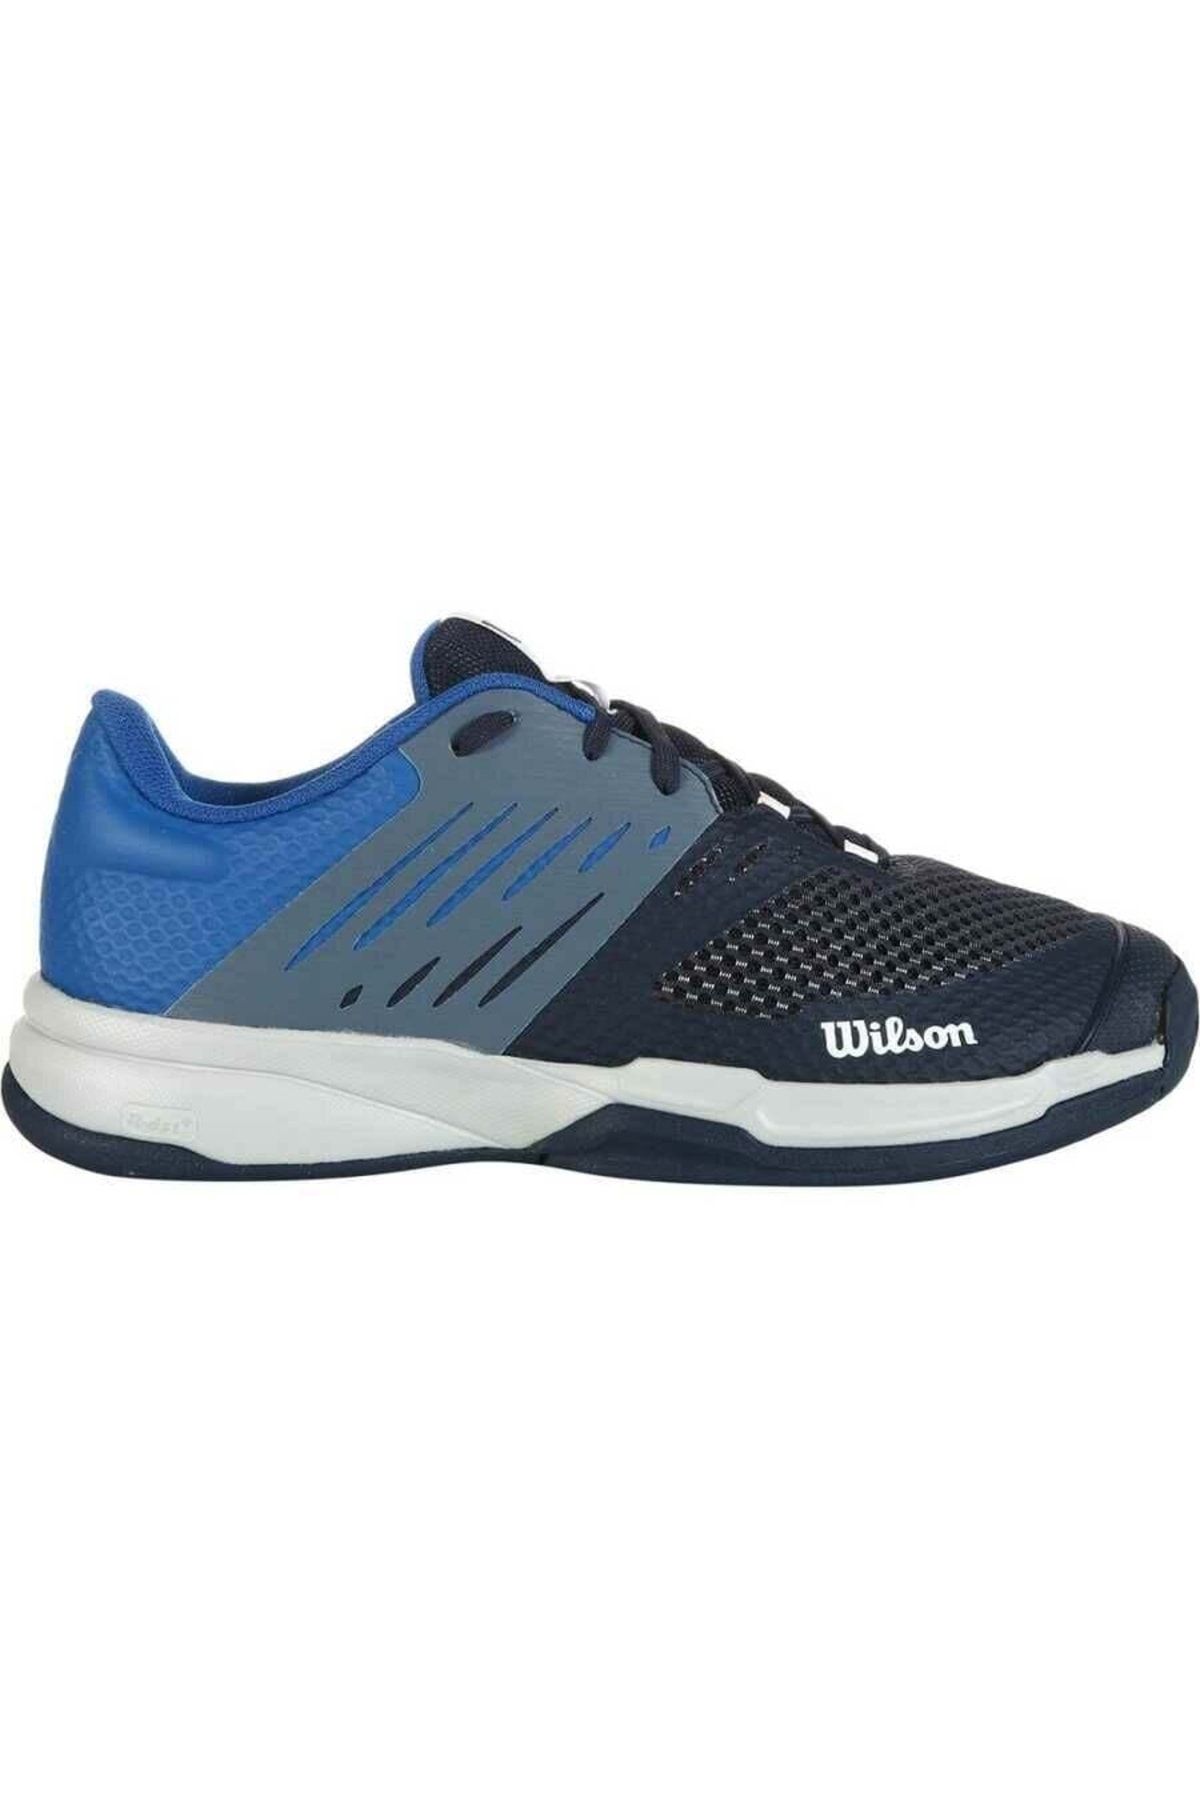 Wilson Kaos Devo 2.0 Erkek Tenis Ayakkabısı Wrs330310